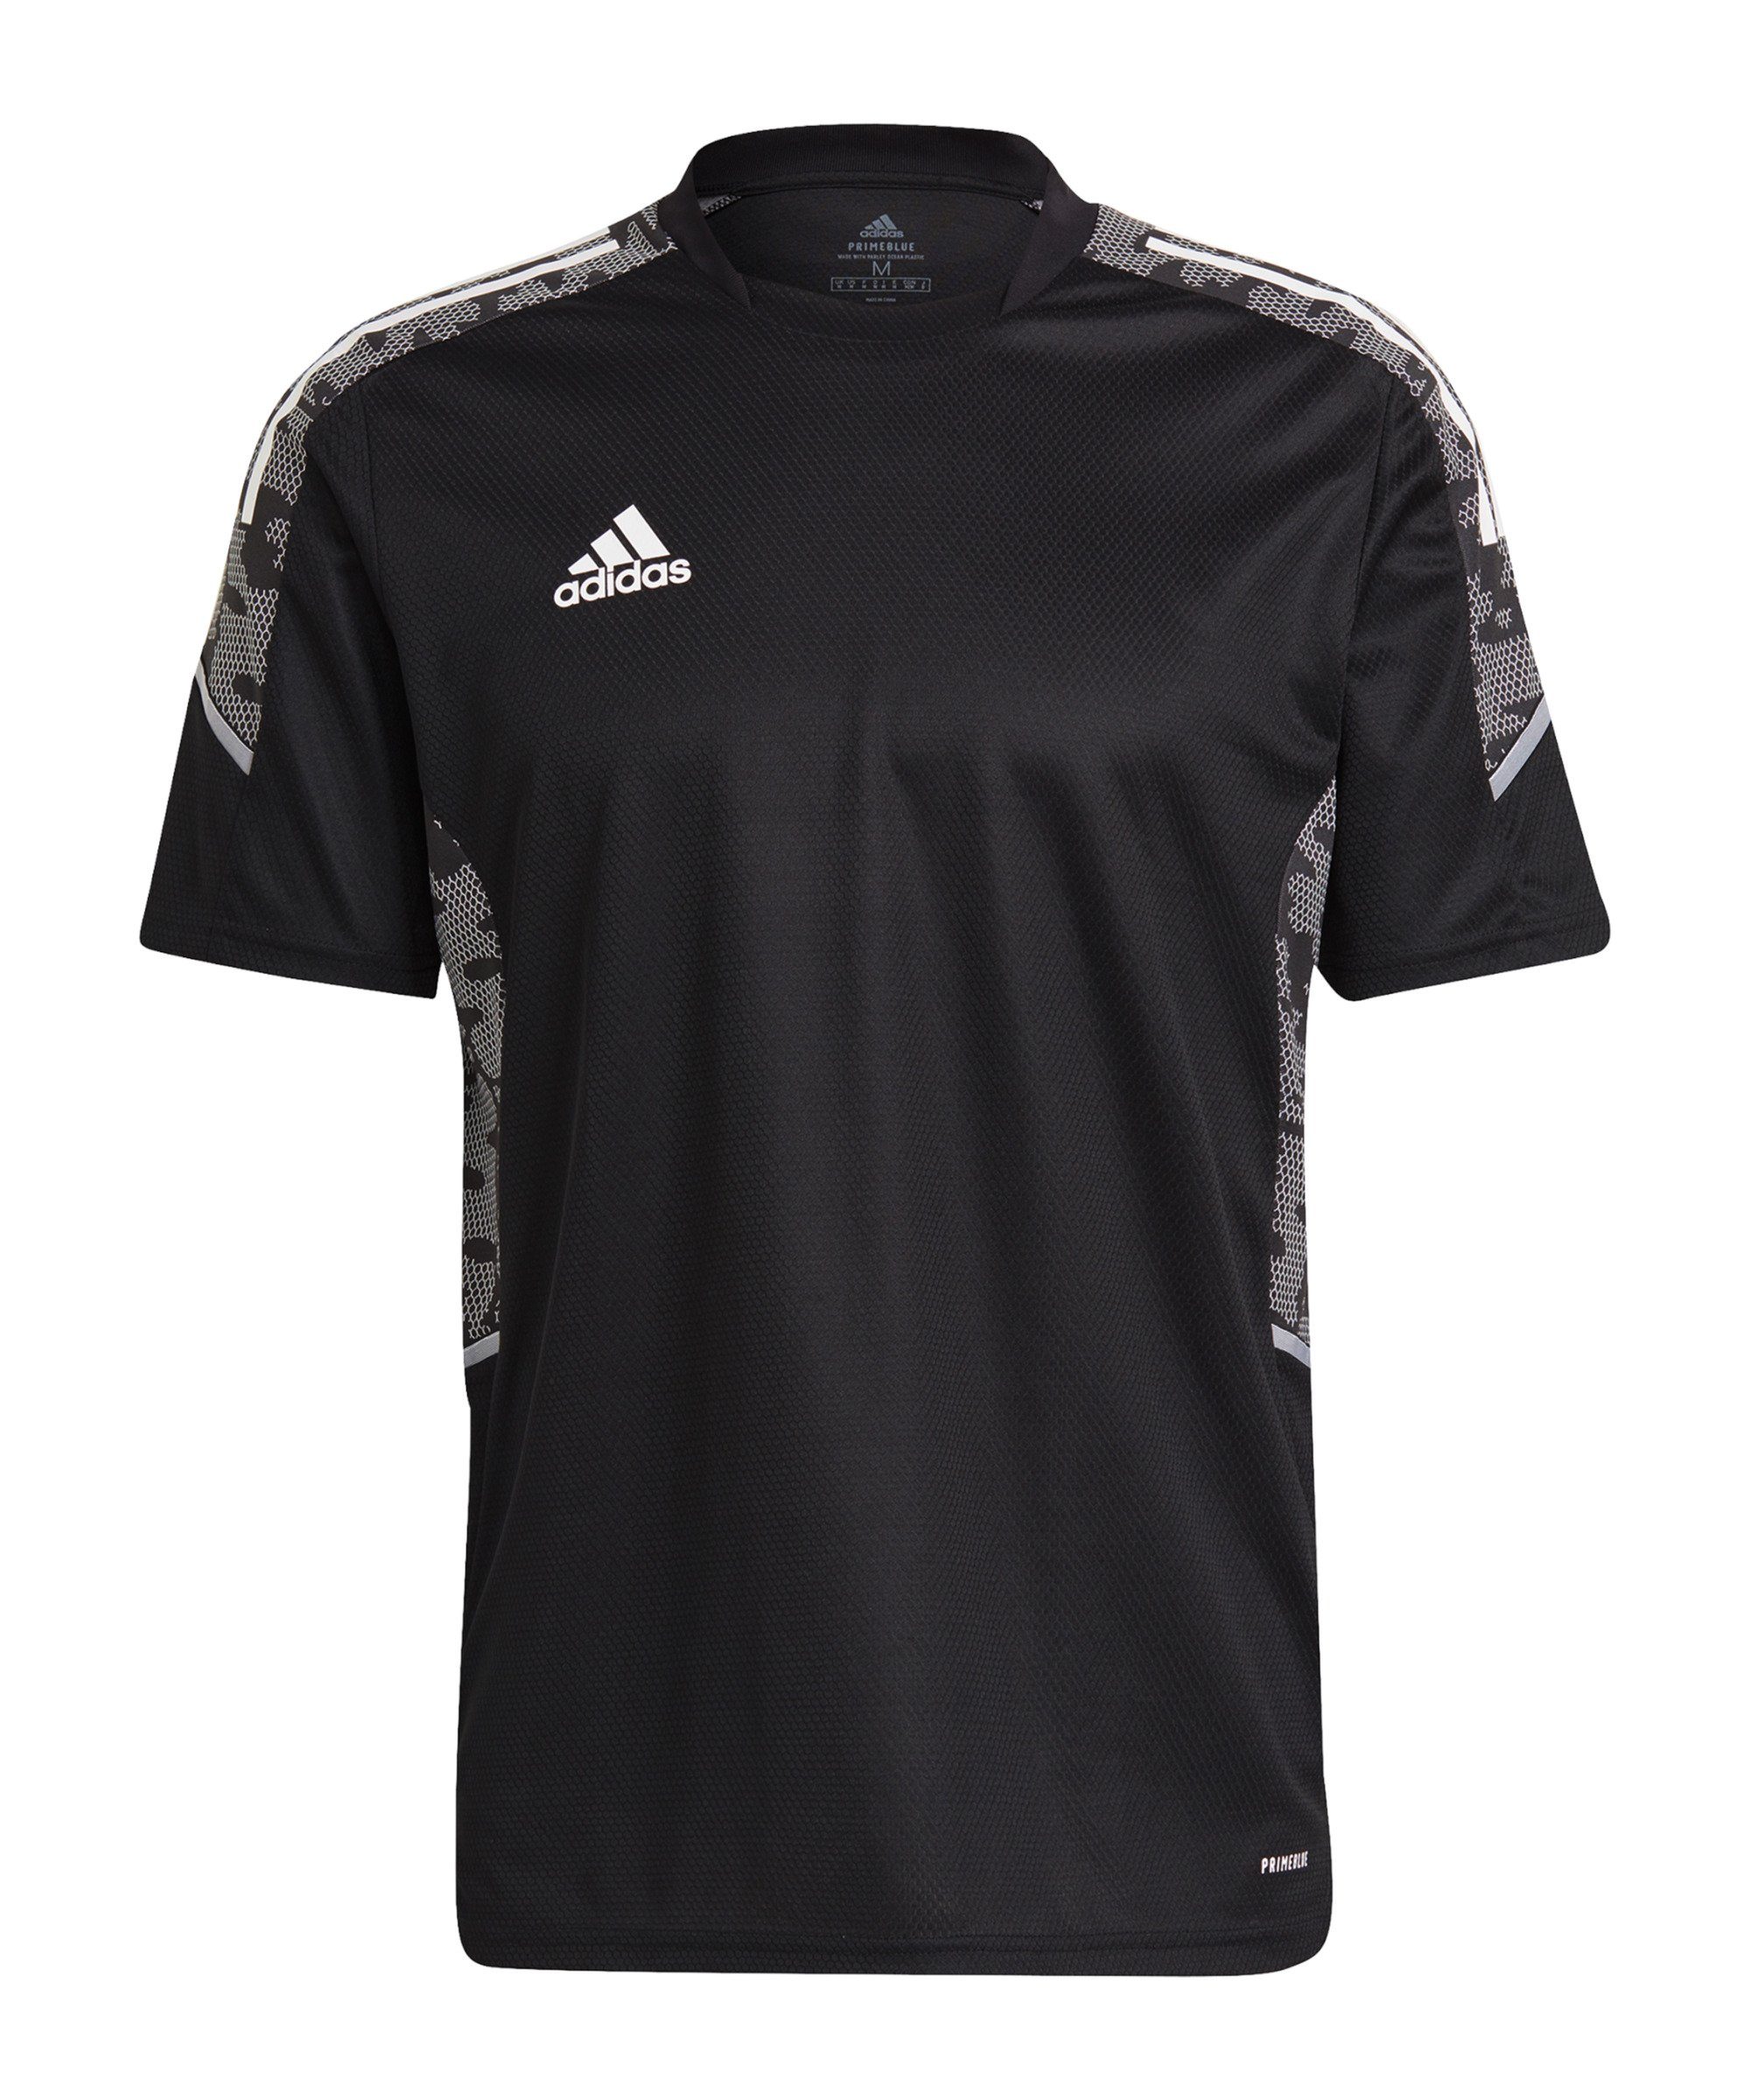 adidas Performance T-Shirt Condivo 21 Trainingsshirt default schwarzweiss